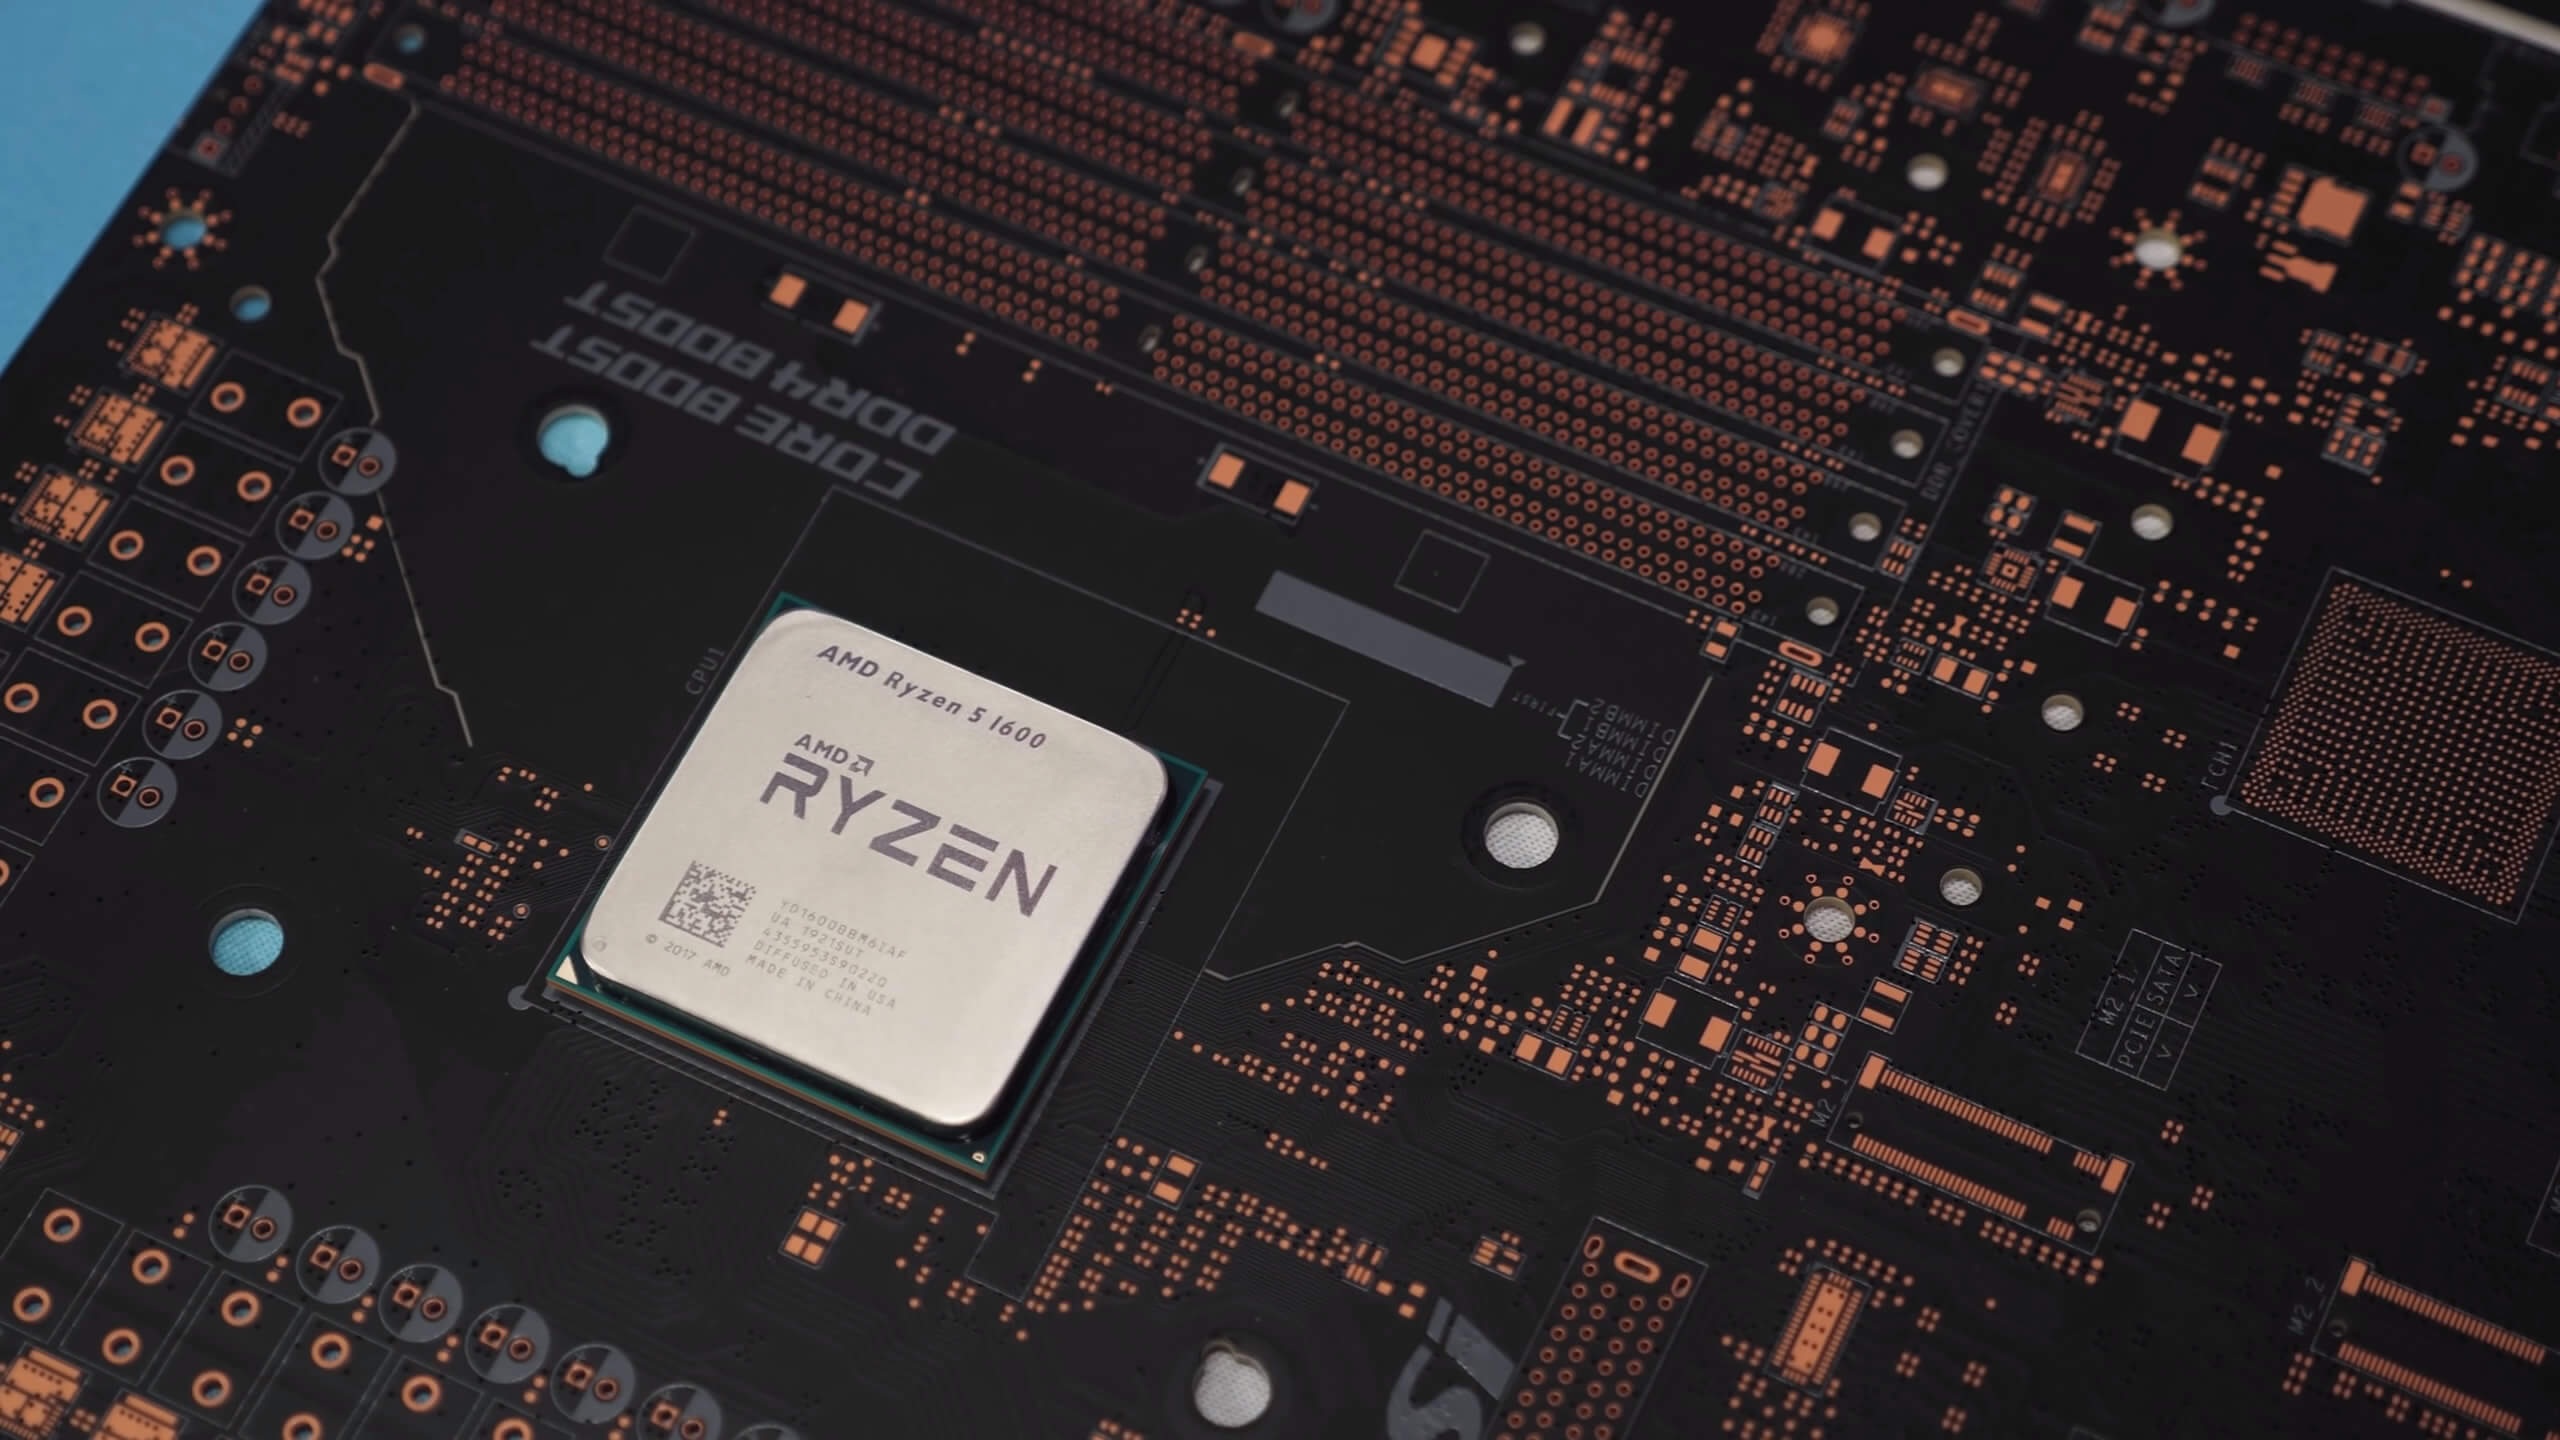 Regeneratie Alstublieft Helder op AMD Ryzen 5 1600 AF Review | TechSpot